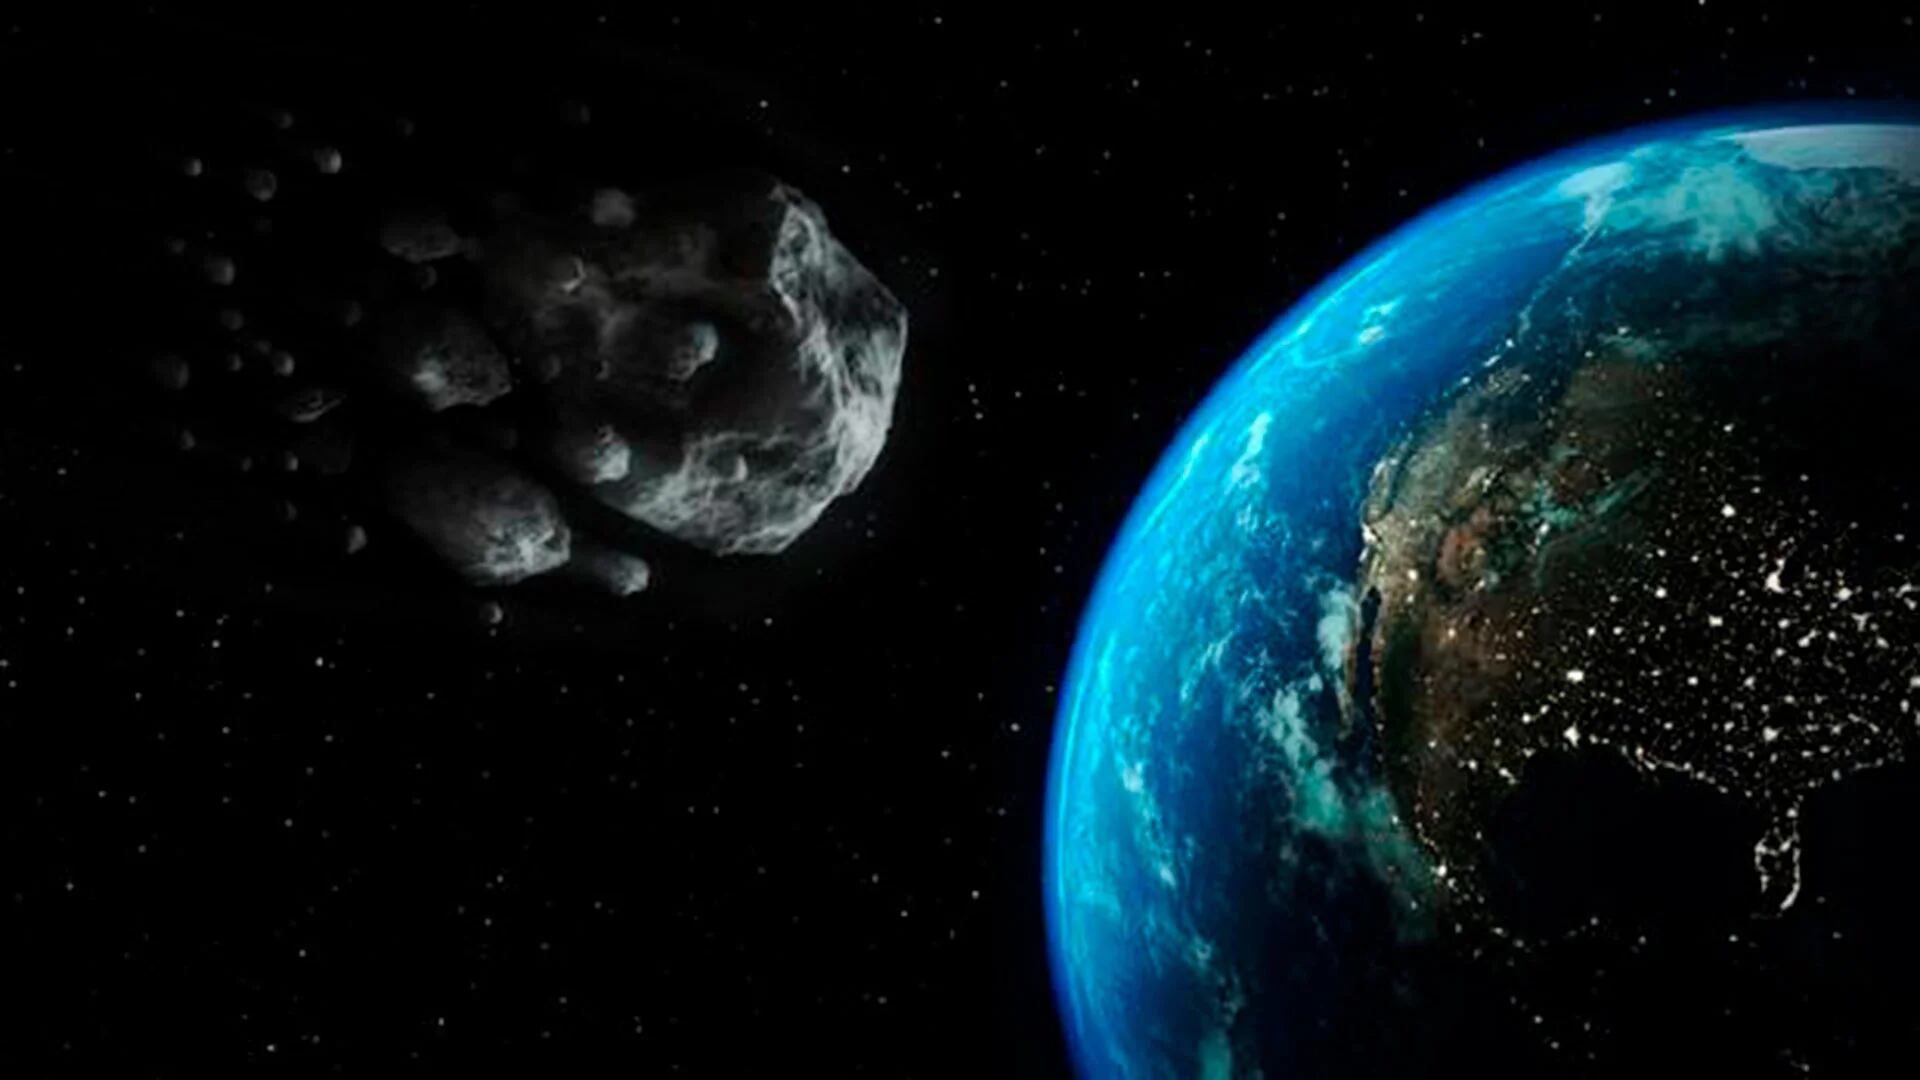 Algunos asteroides pasan muy cerca de la Tierra, mientras otros se encuentran más alejados y, de igual modo, son rastreados por la NASA